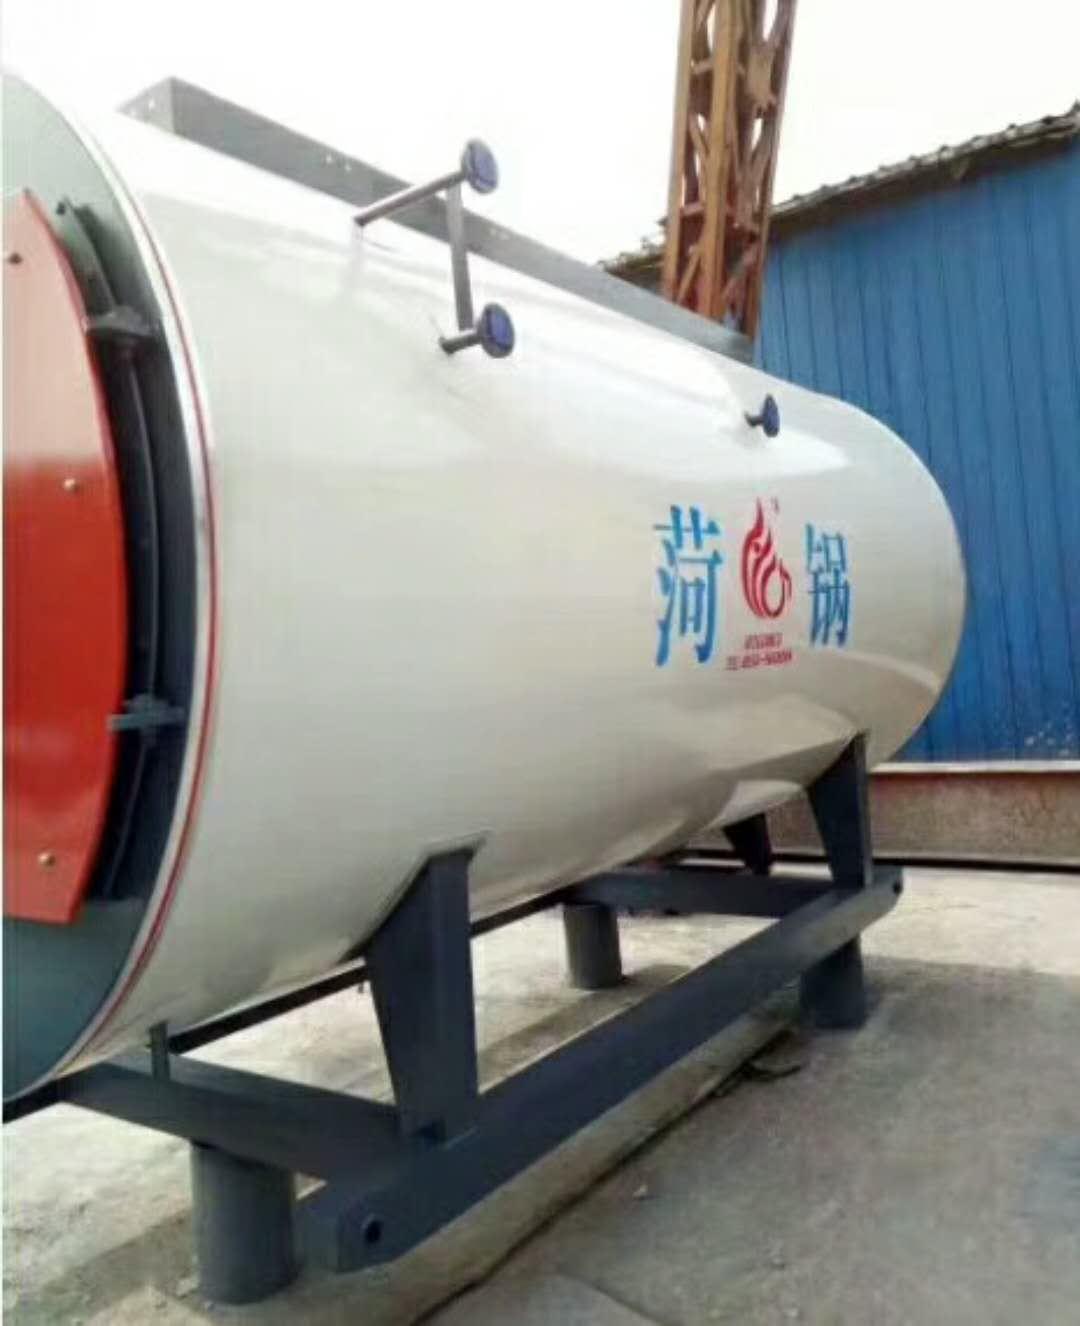 巴里坤哈萨克自治县8吨燃气锅炉